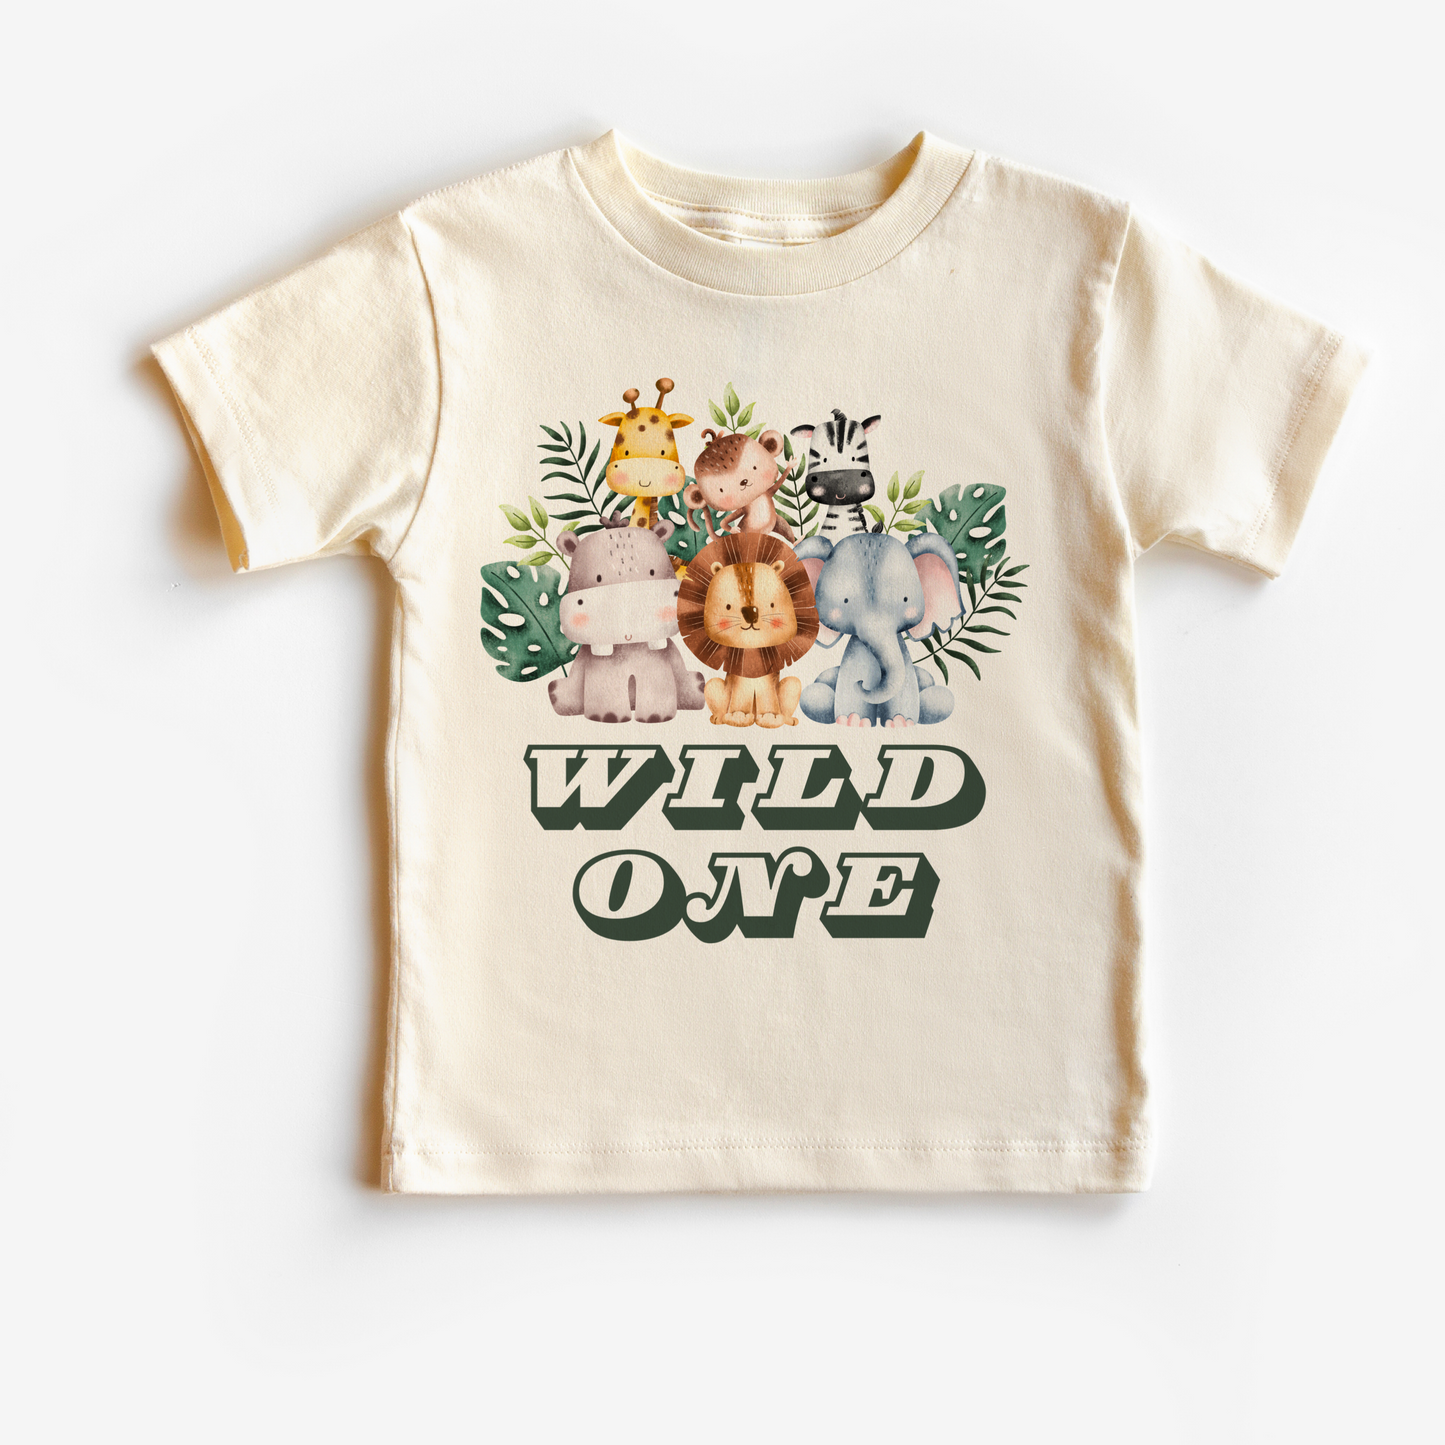 Wild one Safari Birthday t shirt for kids